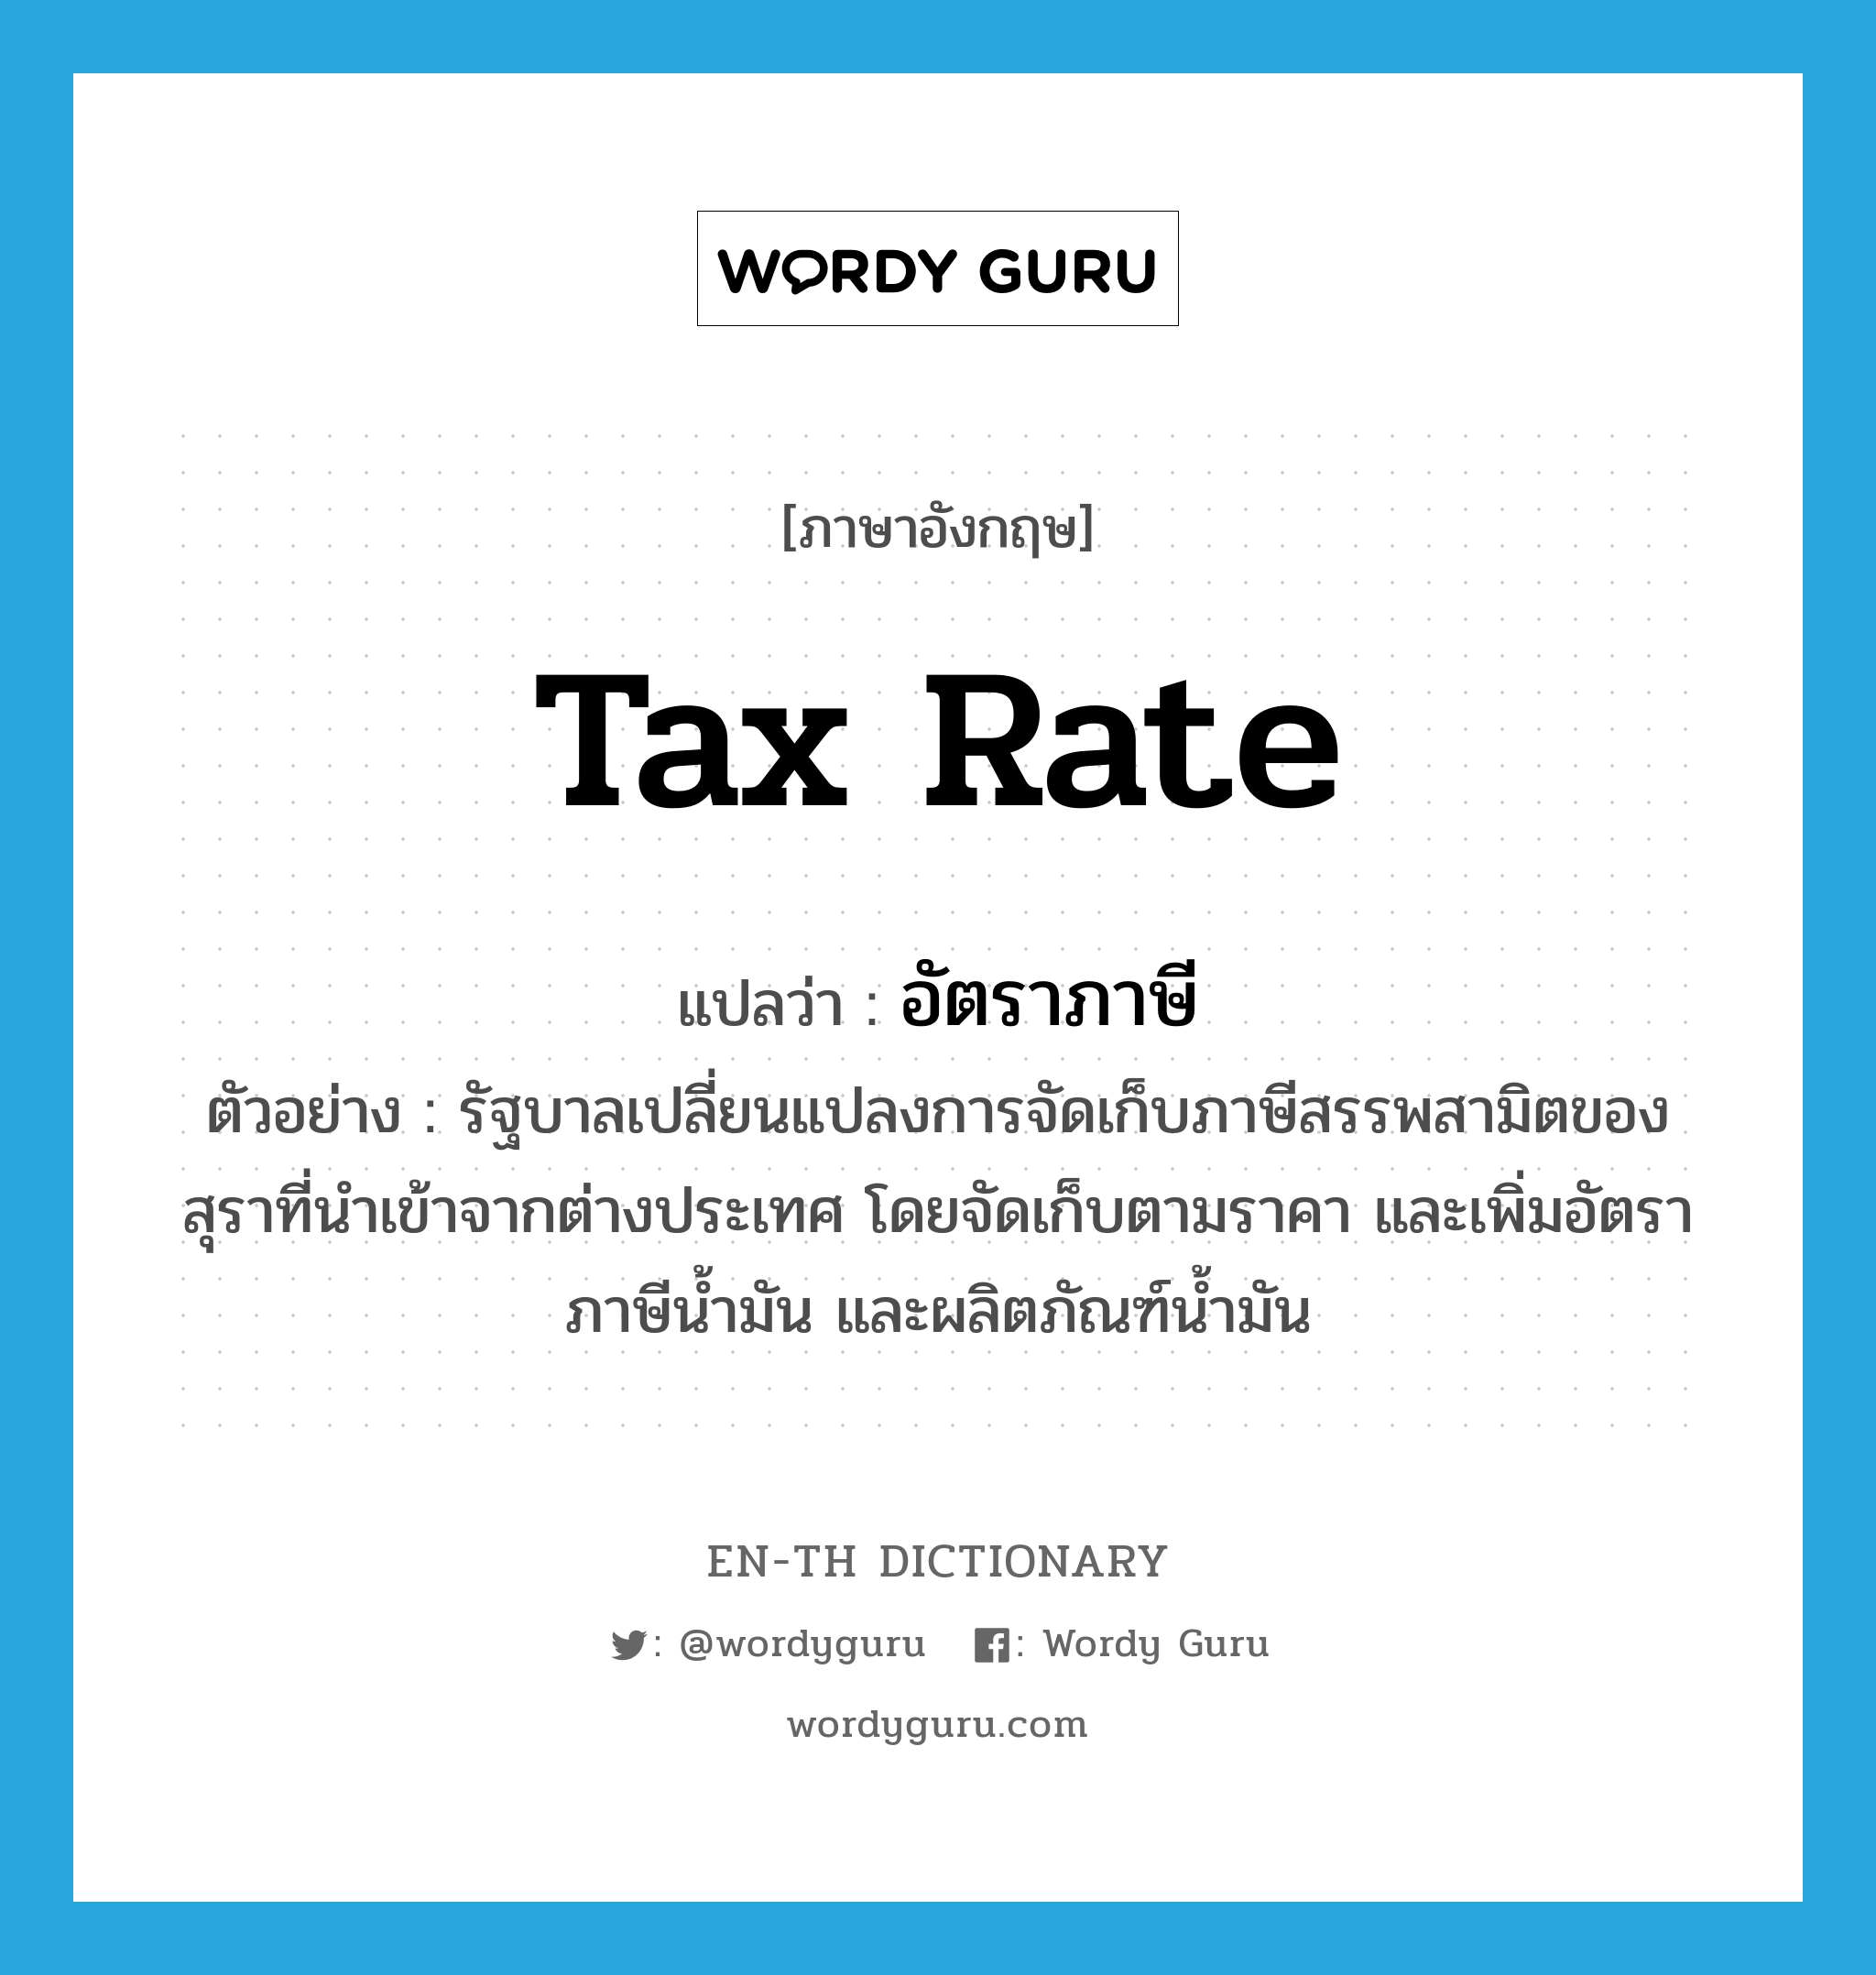 อัตราภาษี ภาษาอังกฤษ?, คำศัพท์ภาษาอังกฤษ อัตราภาษี แปลว่า tax rate ประเภท N ตัวอย่าง รัฐบาลเปลี่ยนแปลงการจัดเก็บภาษีสรรพสามิตของสุราที่นำเข้าจากต่างประเทศ โดยจัดเก็บตามราคา และเพิ่มอัตราภาษีน้ำมัน และผลิตภัณฑ์น้ำมัน หมวด N